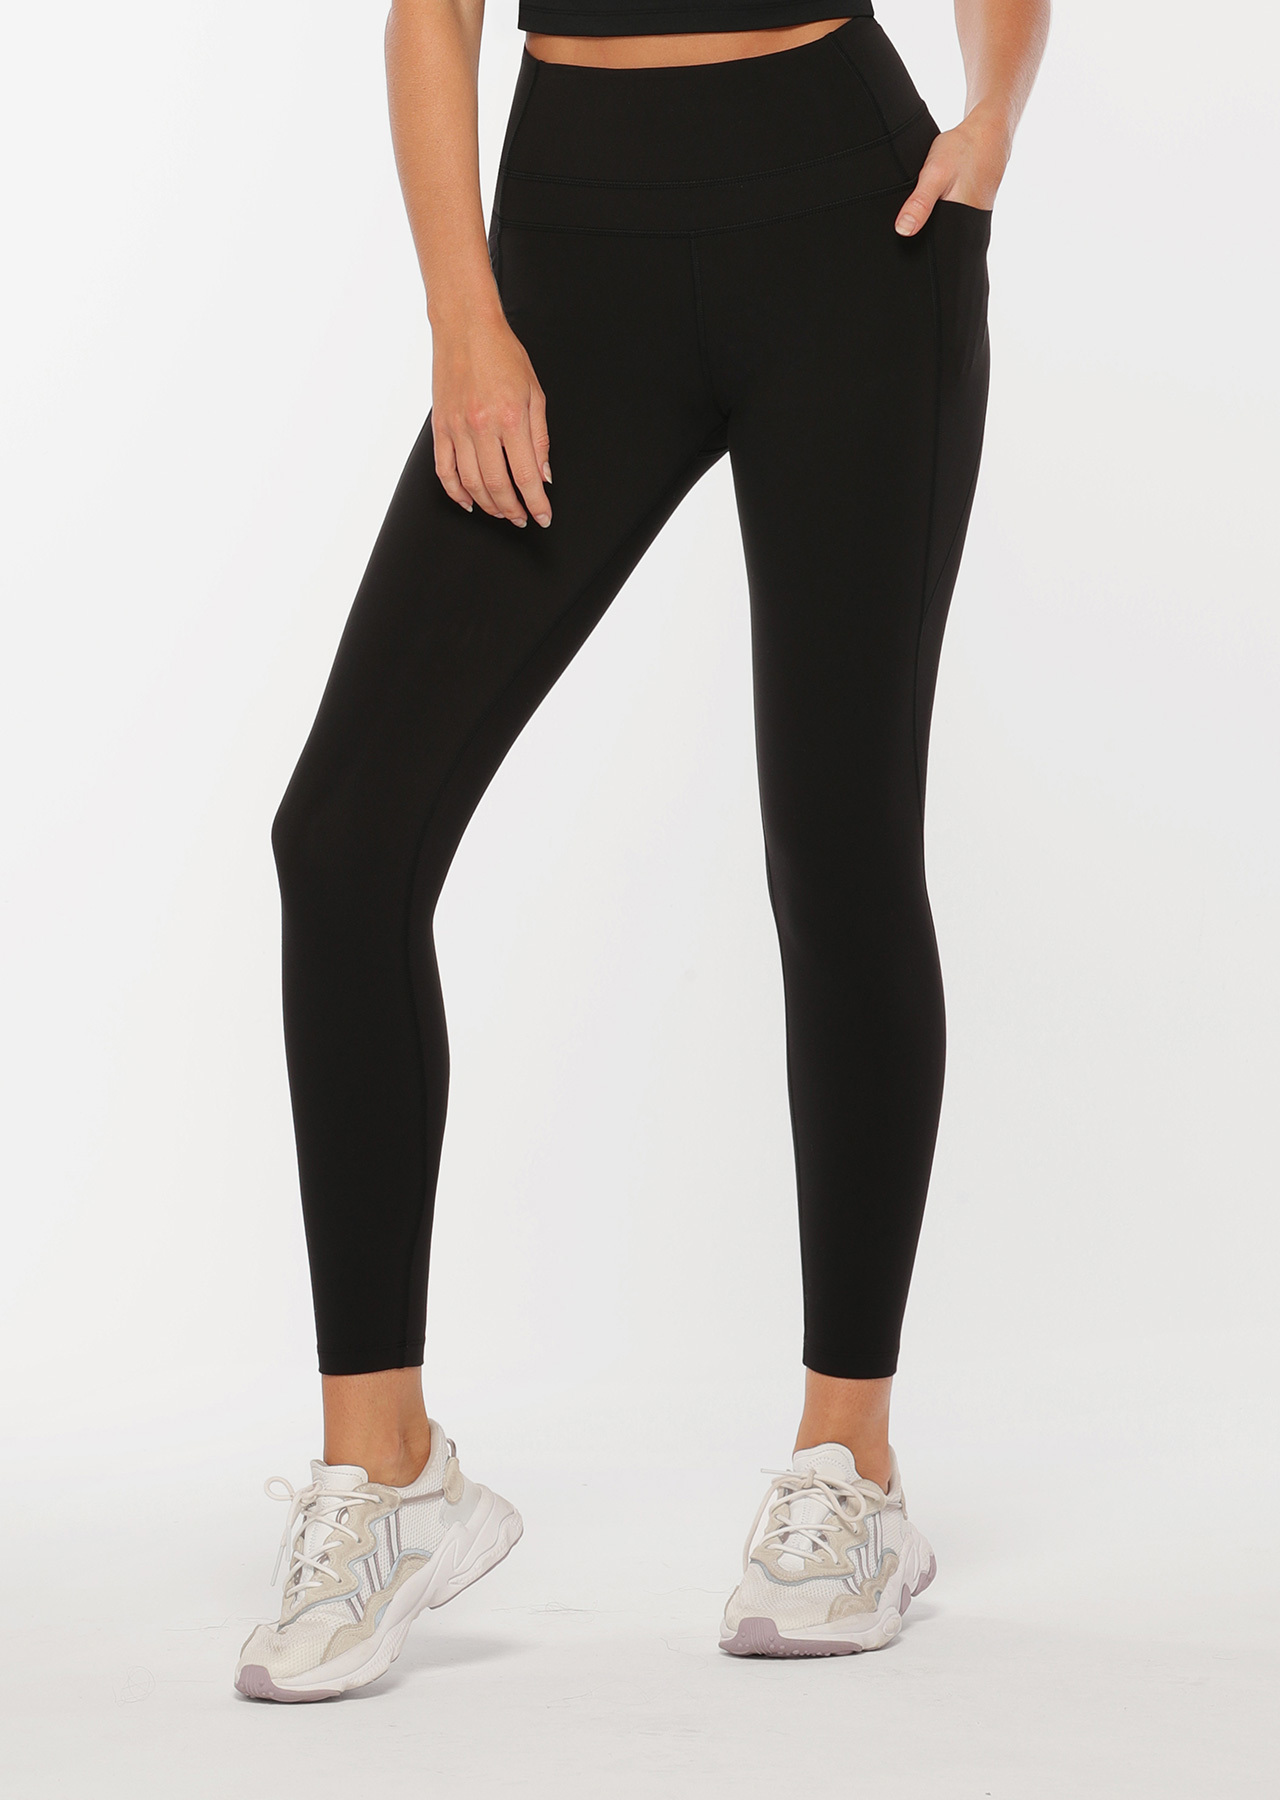 Stomach Support Full Length Leggings | Black | Full Length | Lorna Jane USA